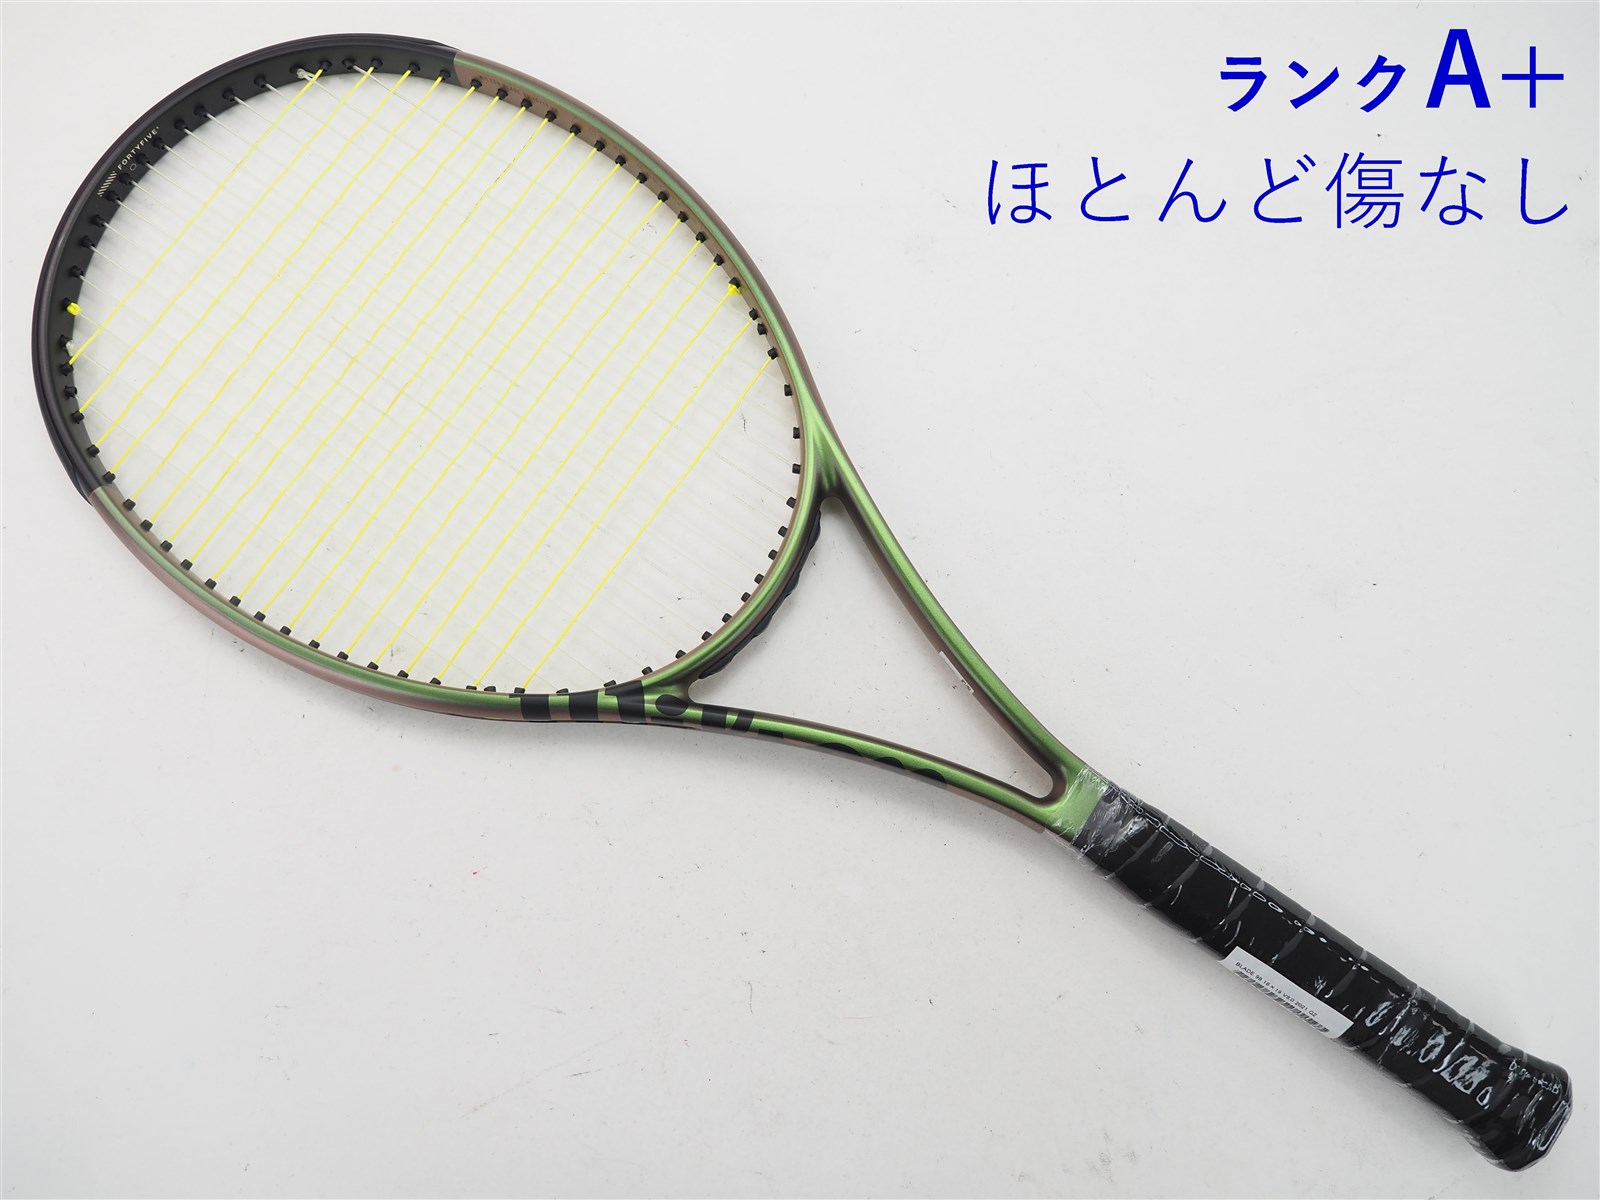 テニスラケット ウィルソン ブレード98S v6.0 グリップ2 - ラケット 